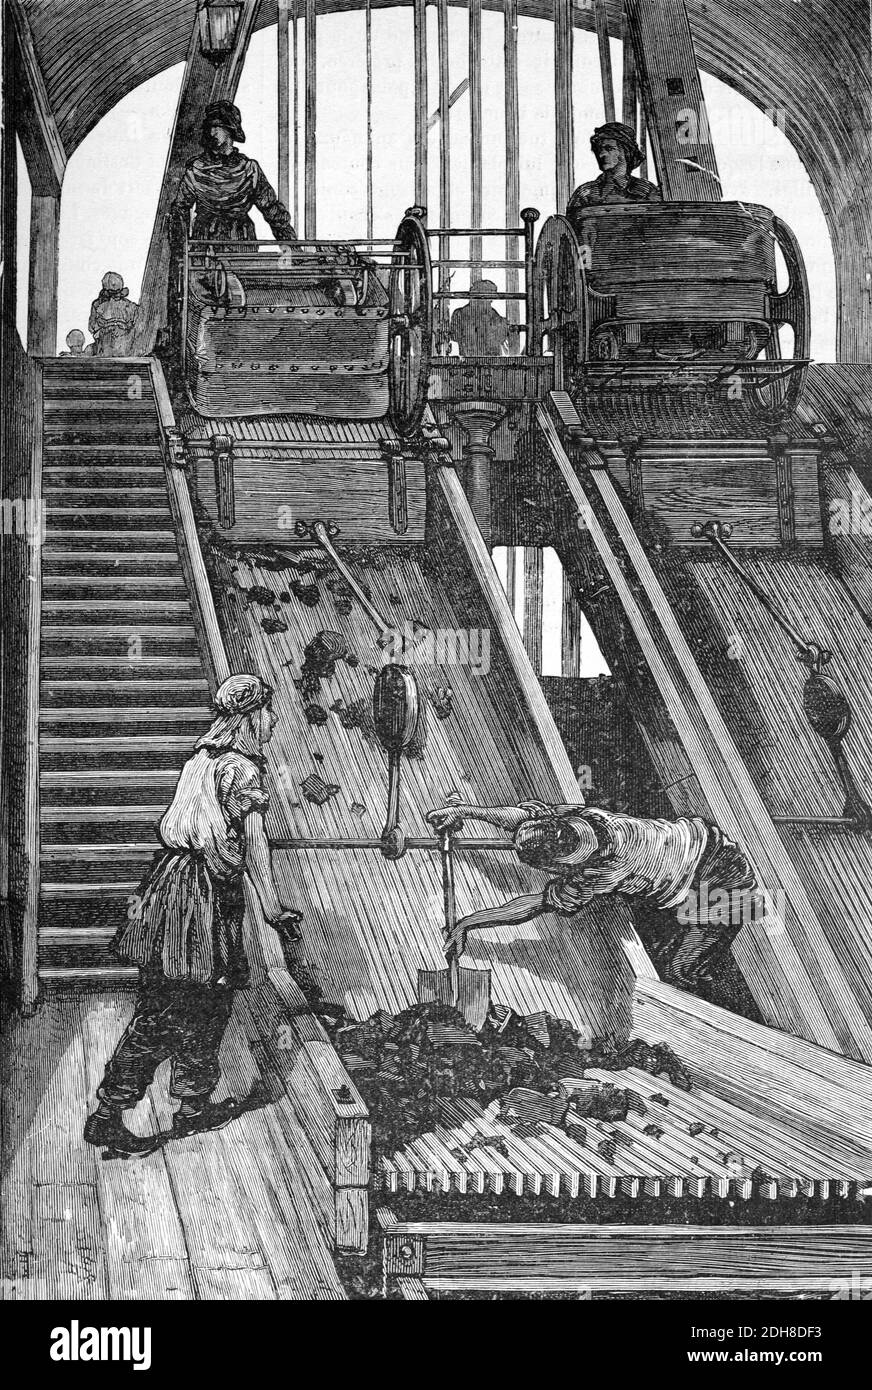 Tri du charbon ou nivellement du charbon sur un élévateur ou un tapis roulant Dans le cadre de Pit Head ou la tour Winding au-dessus de la mine de charbon (Engr 1880) Illustration ancienne ou gravure Banque D'Images